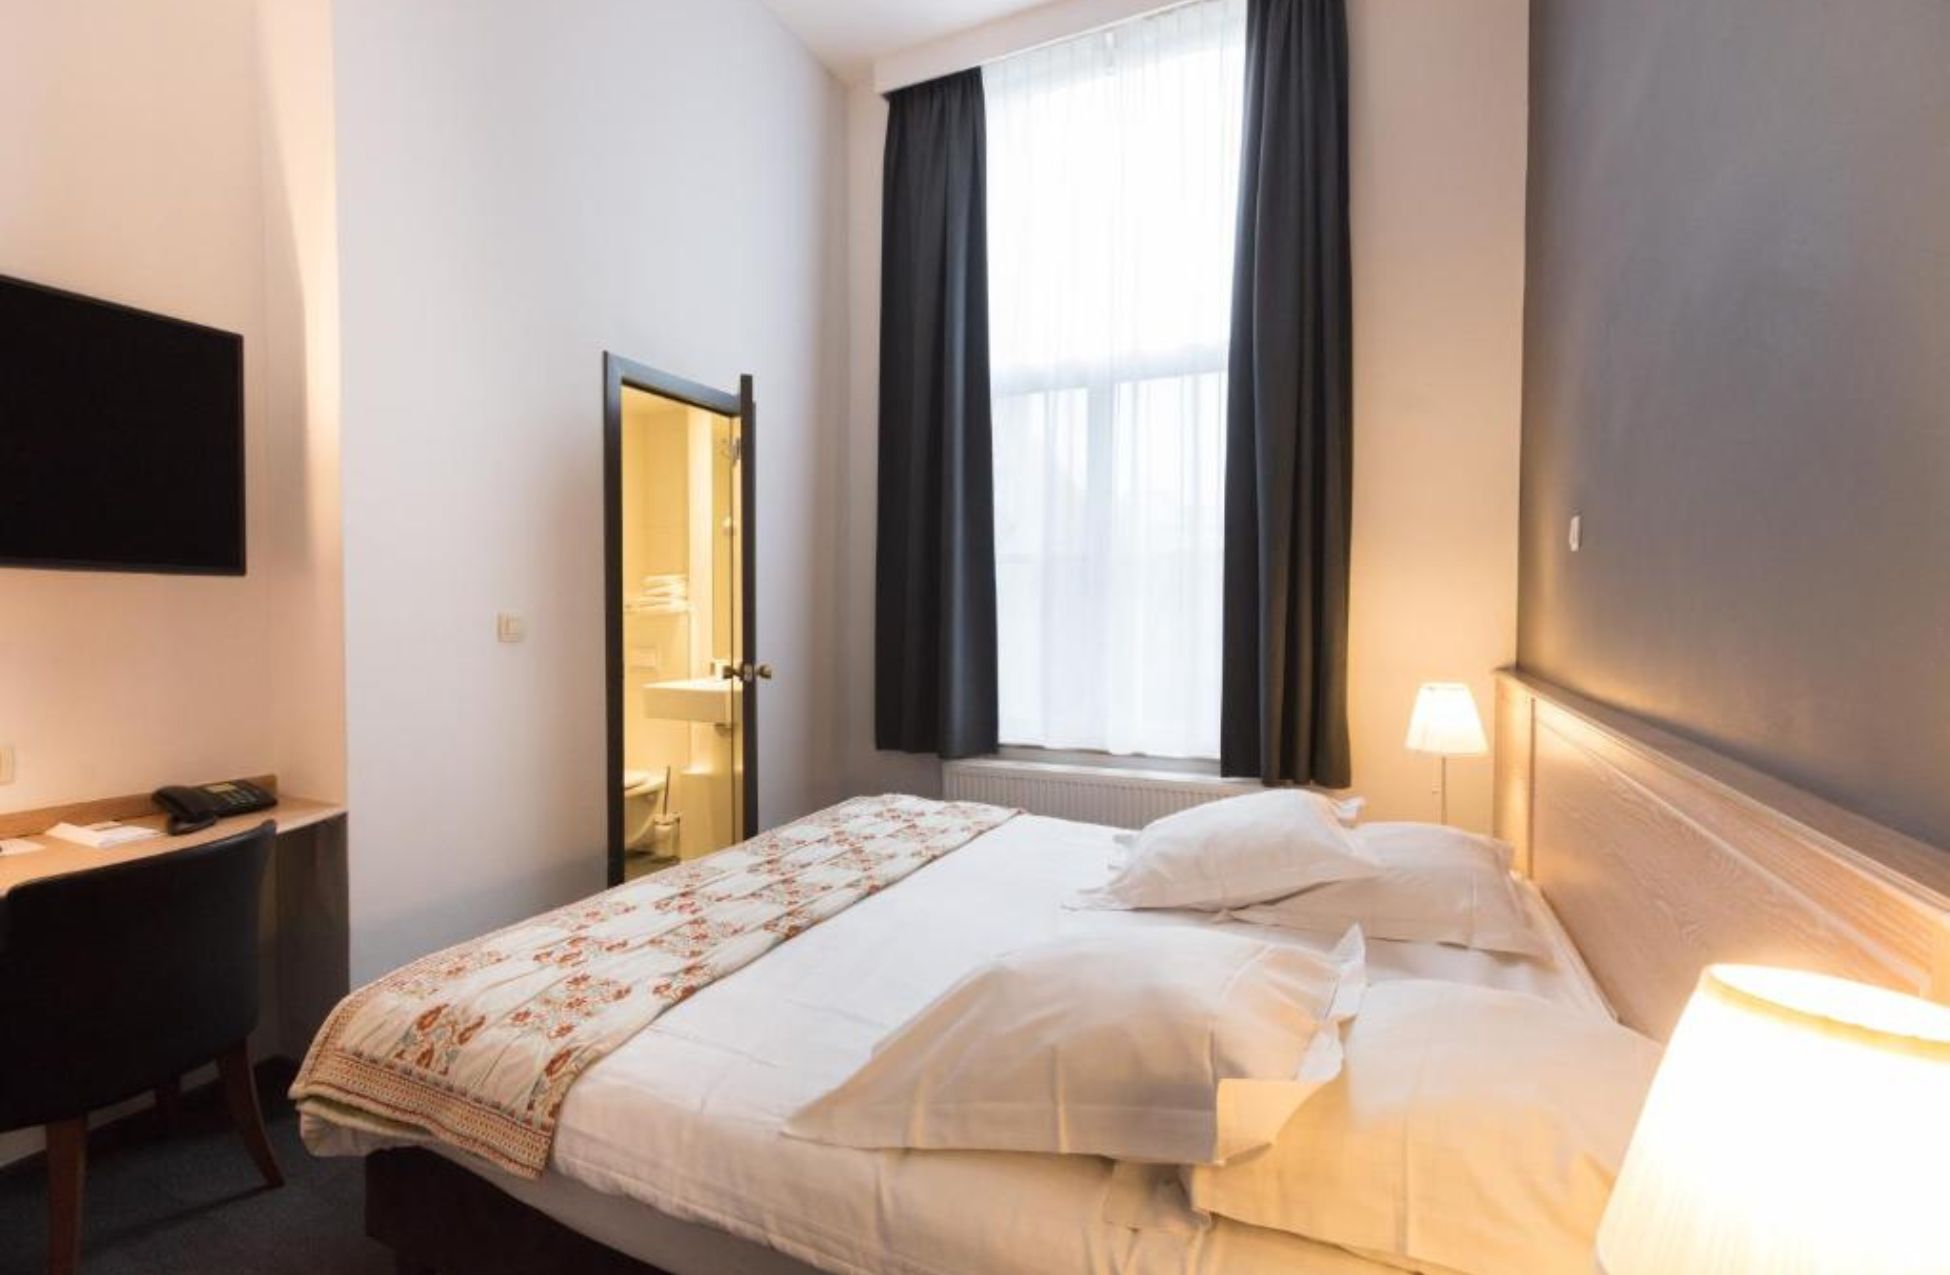 Hotel Gravensteen - Best Hotels in Ghent